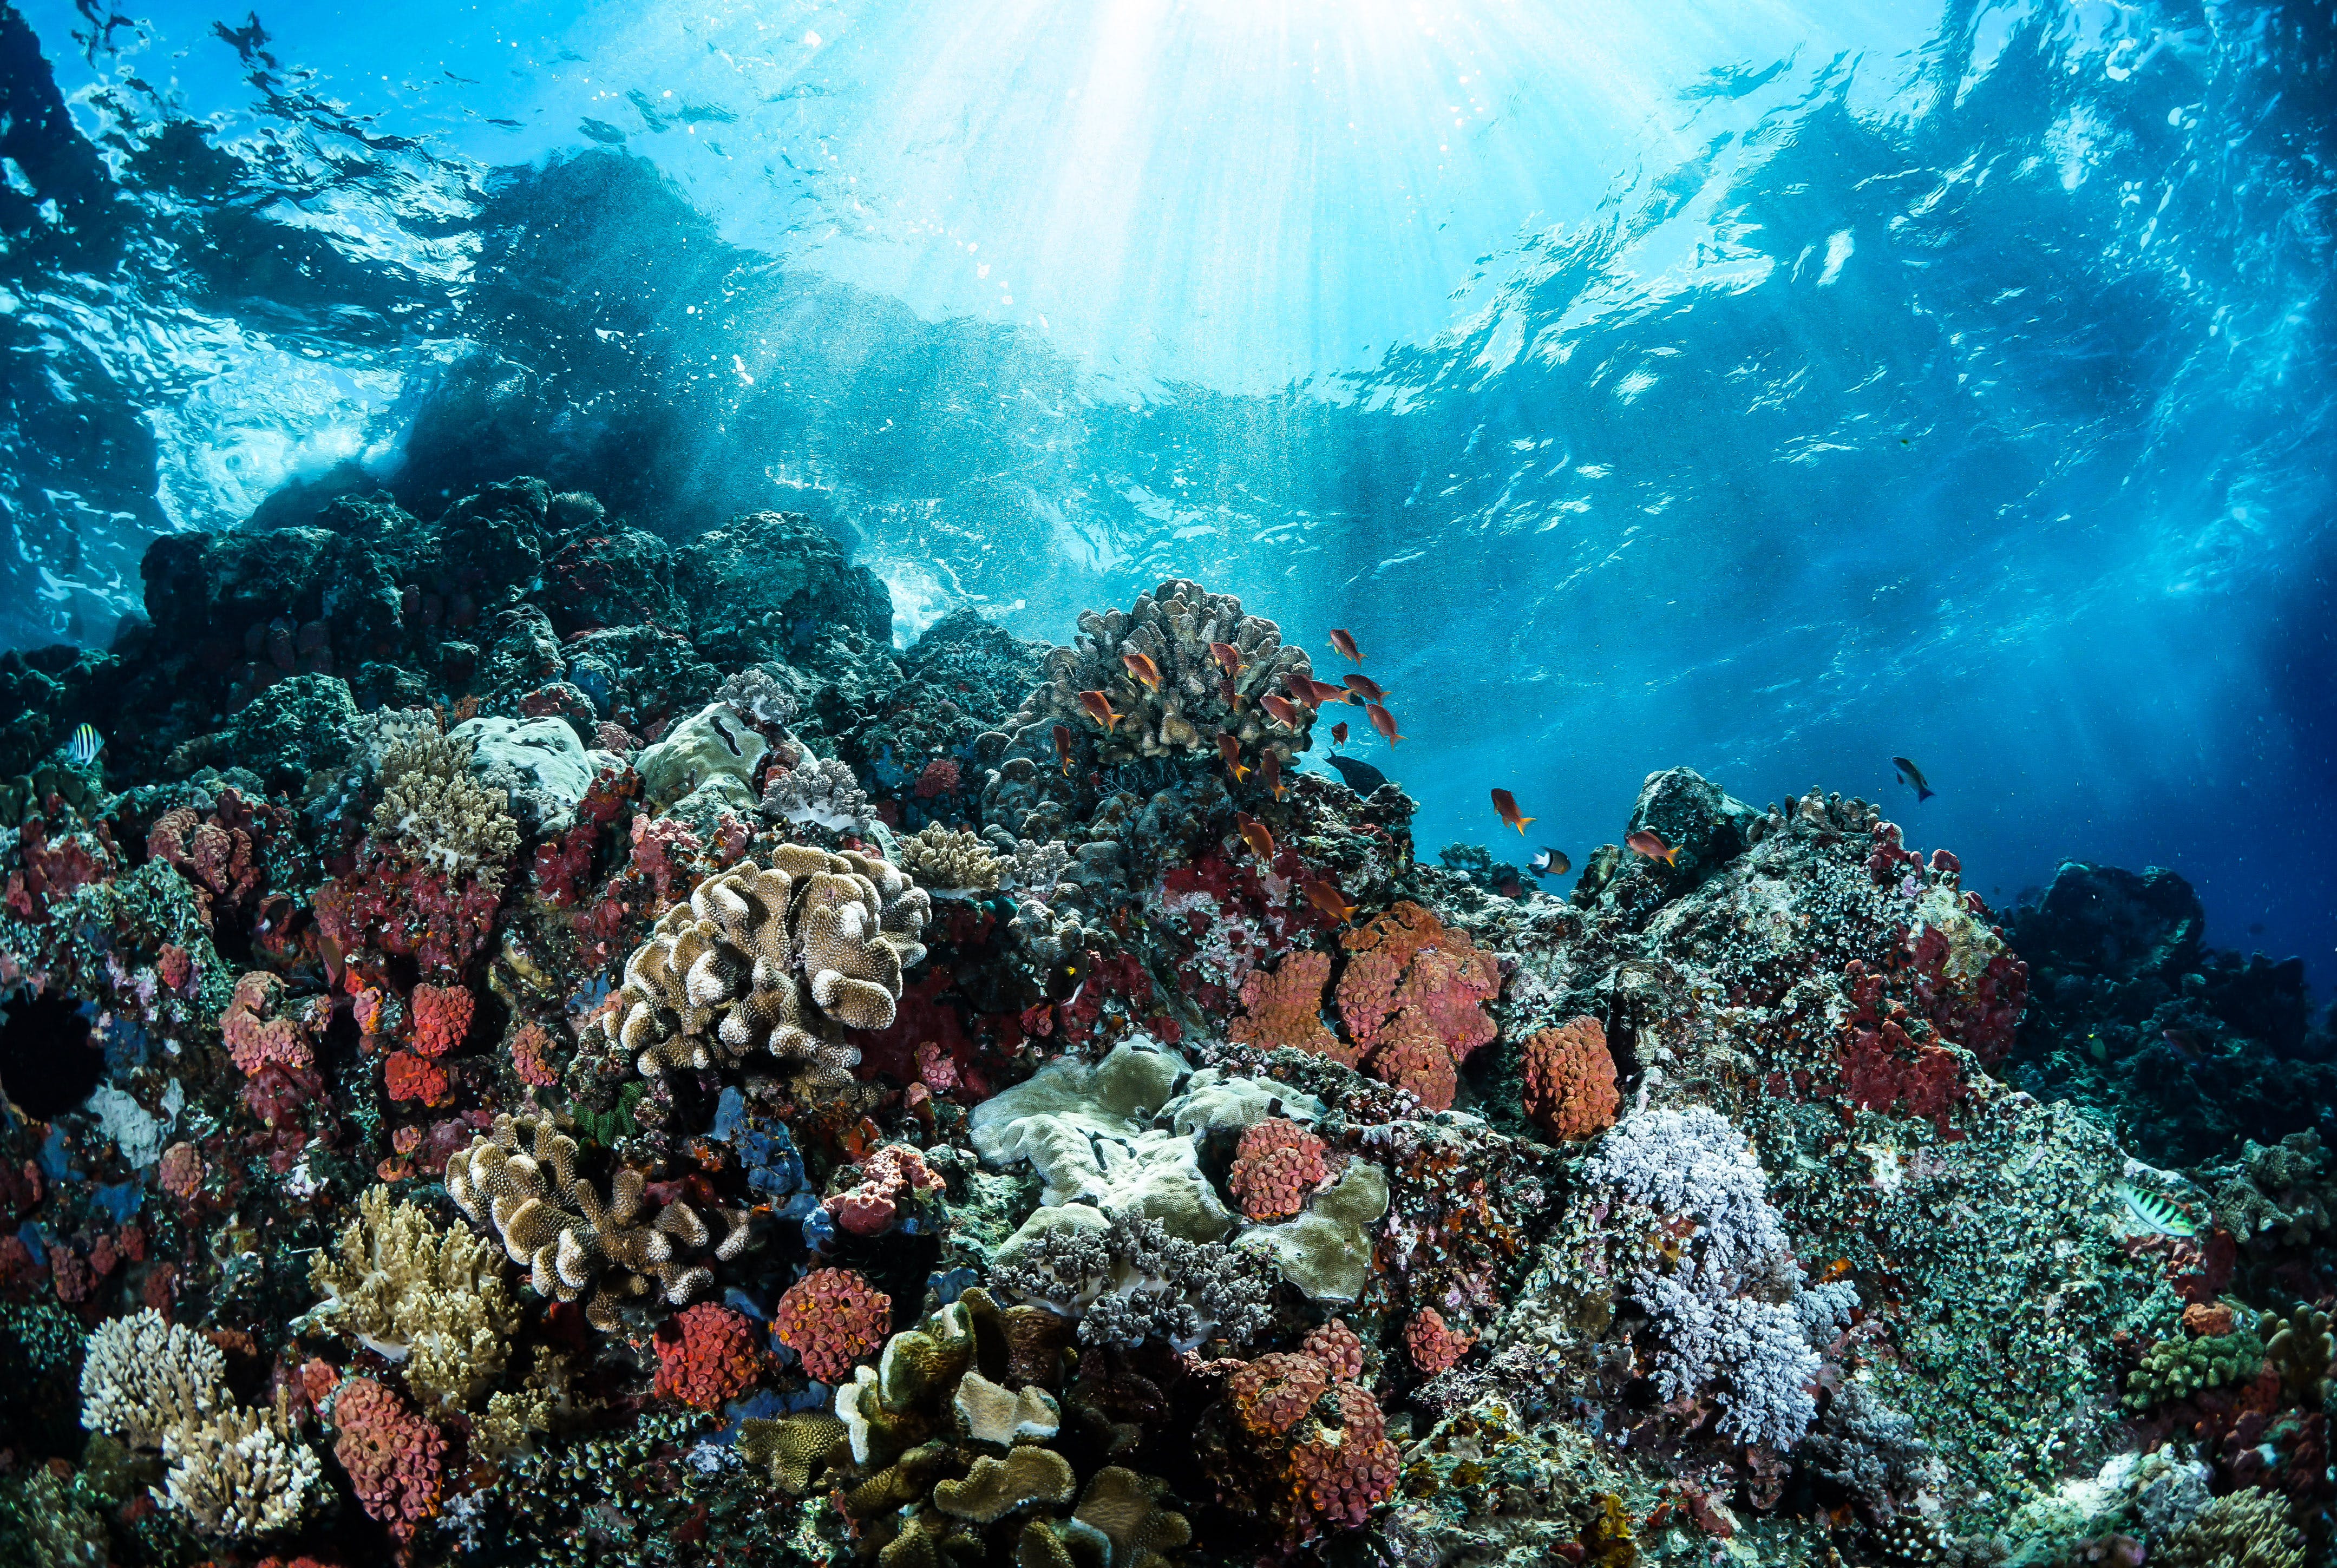 Free Fotos de stock gratuitas de agua Azul, arrecife de coral, bajo el agua Stock Photo